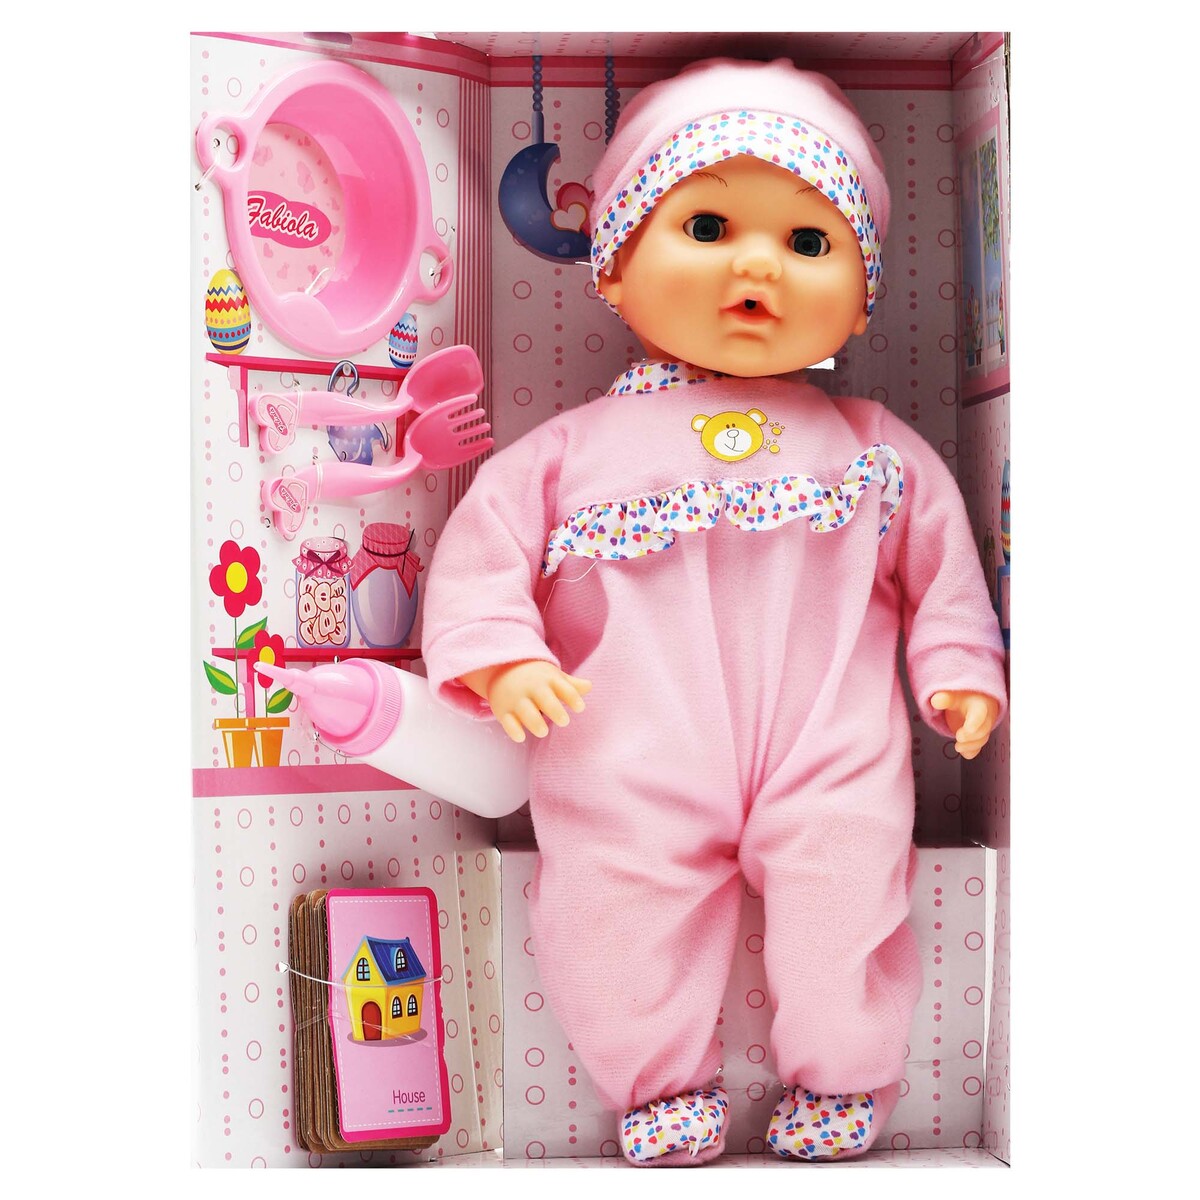 Fabiola Baby Doll With Feeding Set 8099